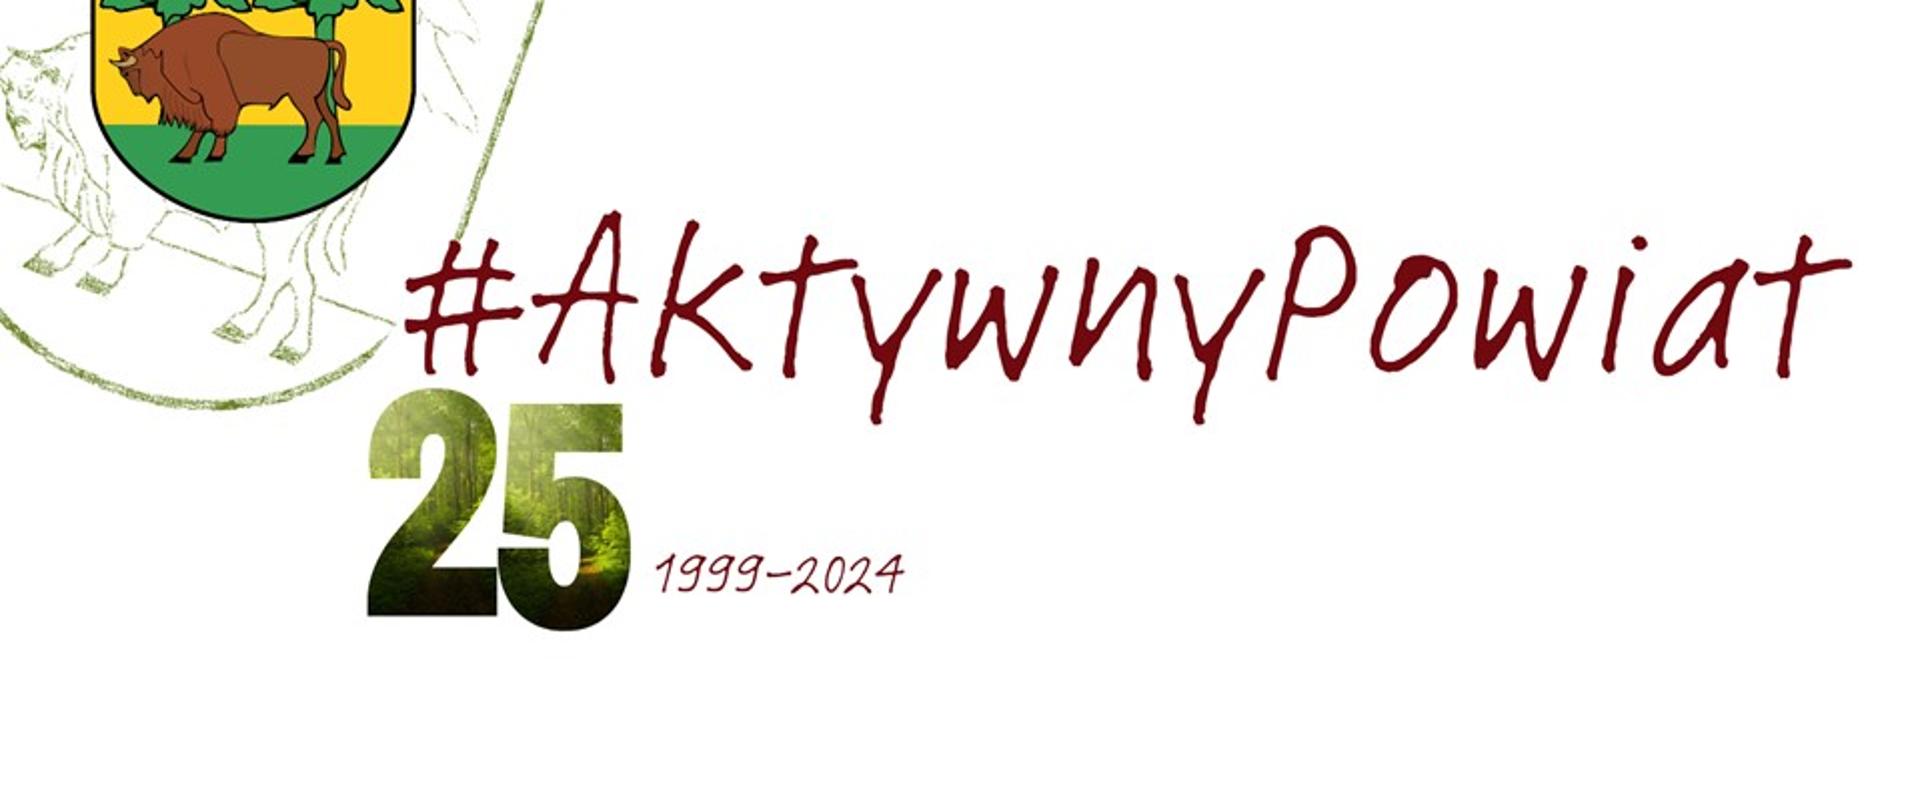 Na białym tle herb Powiatu Hajnowskiego i napis: #AktywnyPowiat, 25, 1999-2024